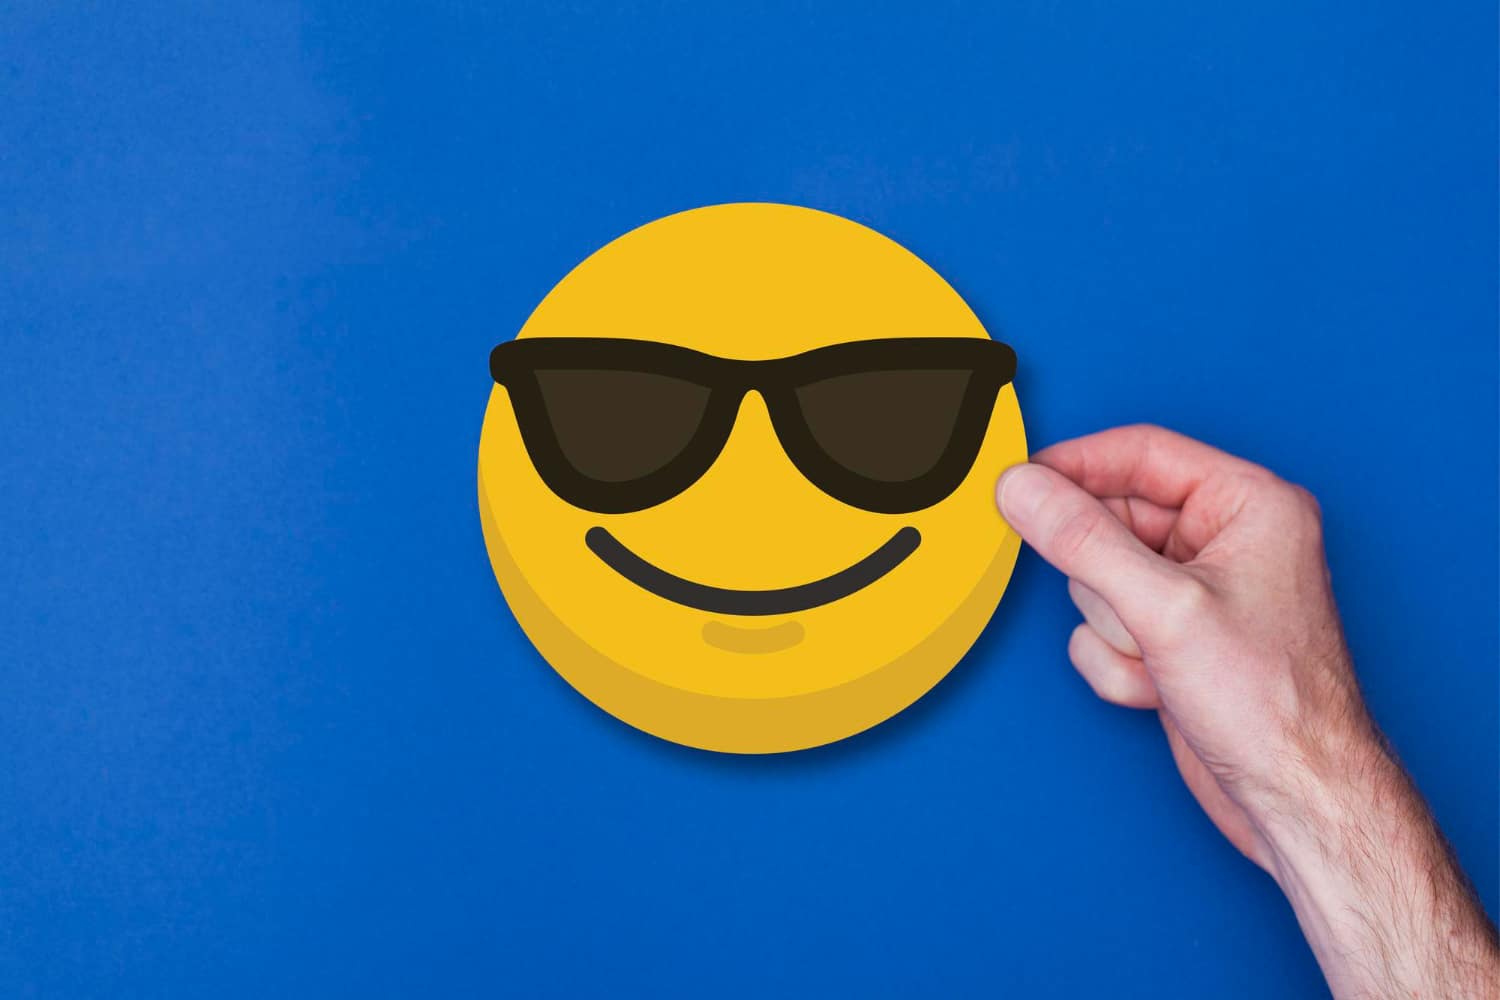  Emoji: saznajte pravo značenje emotikona koji se smiješi sa sunčanim naočalama